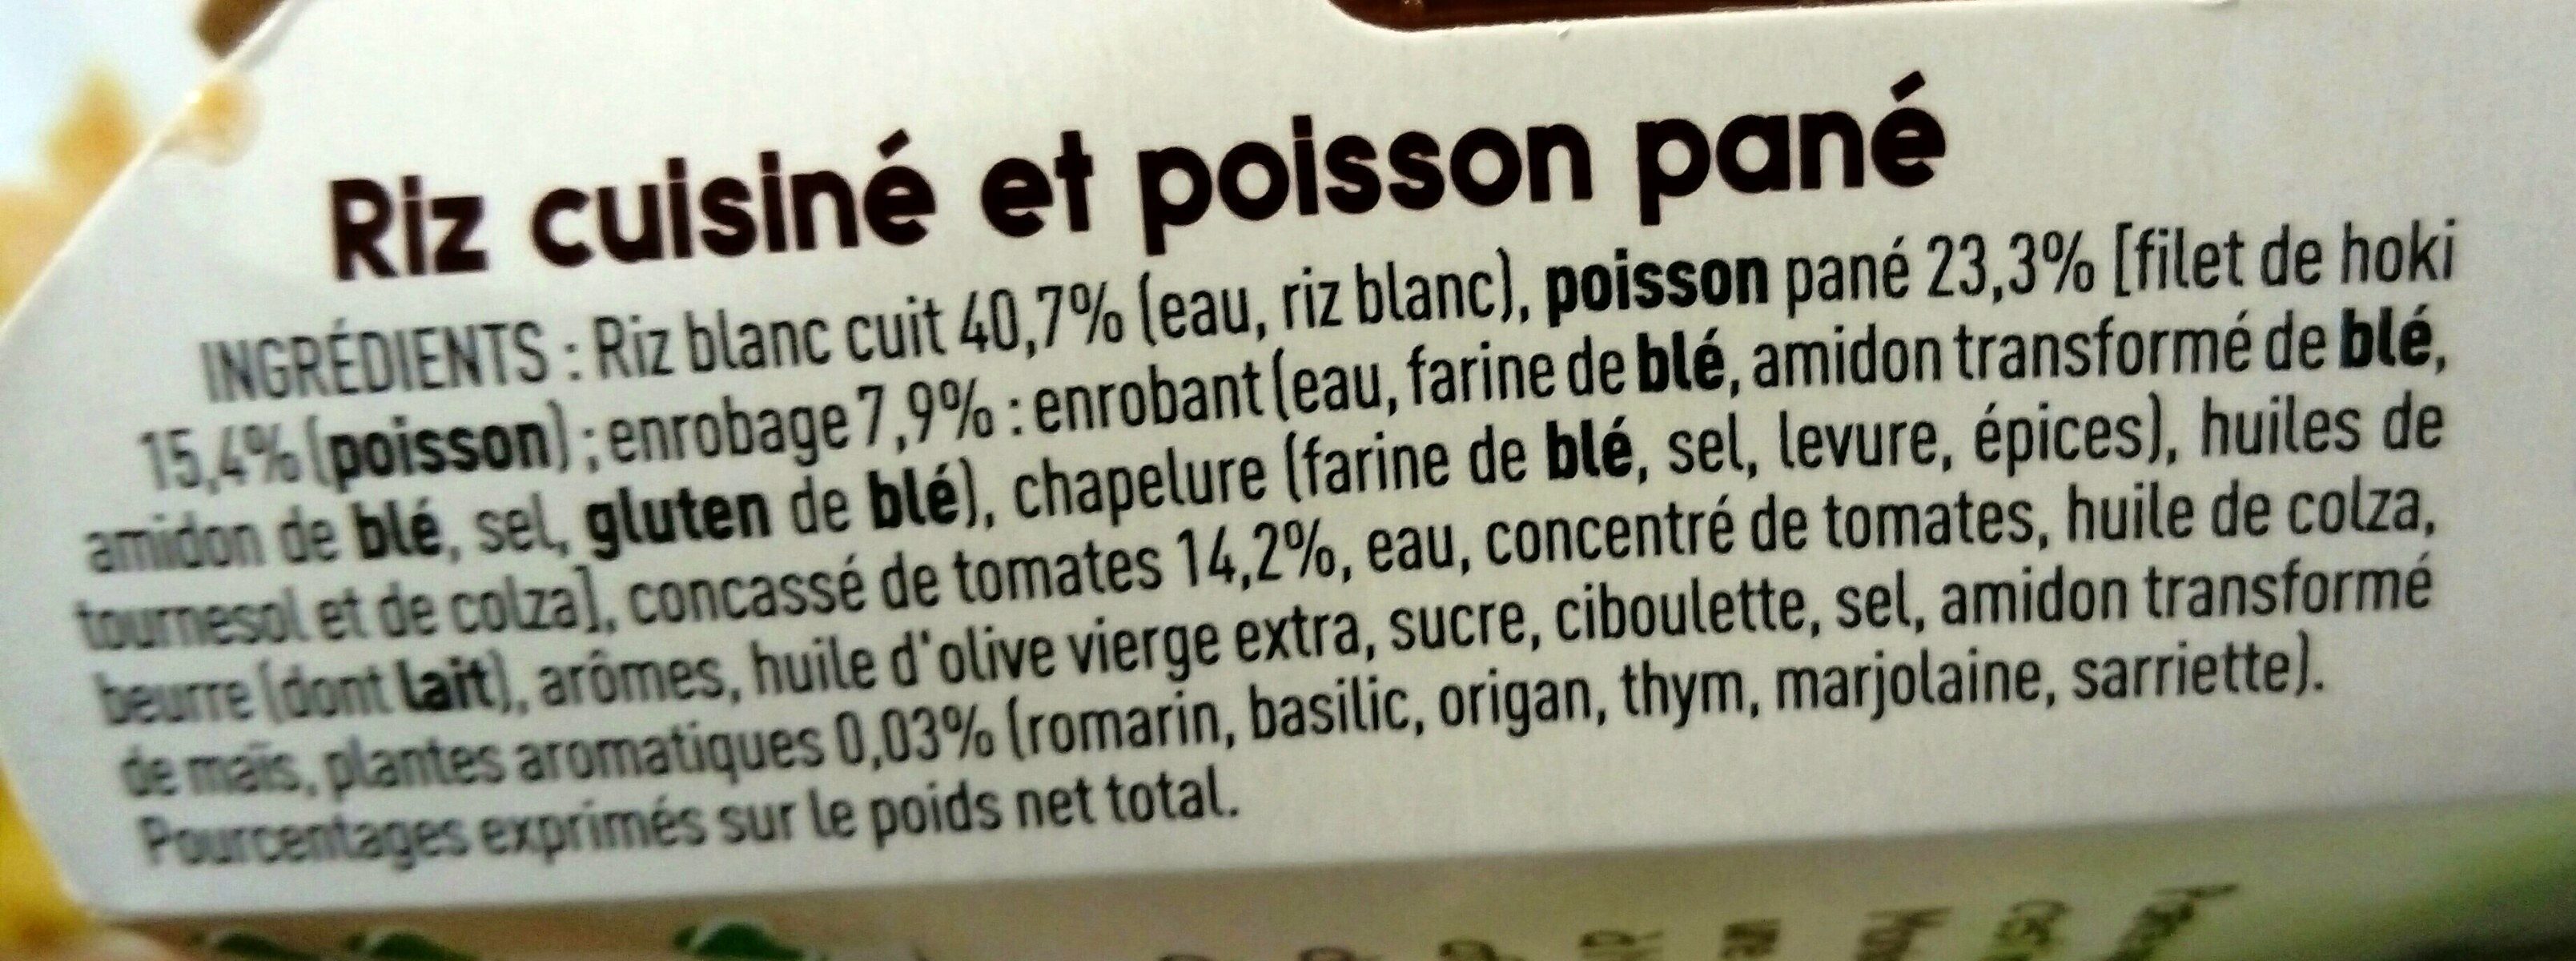 Poisson pané Riz tomaté - Ingrédients